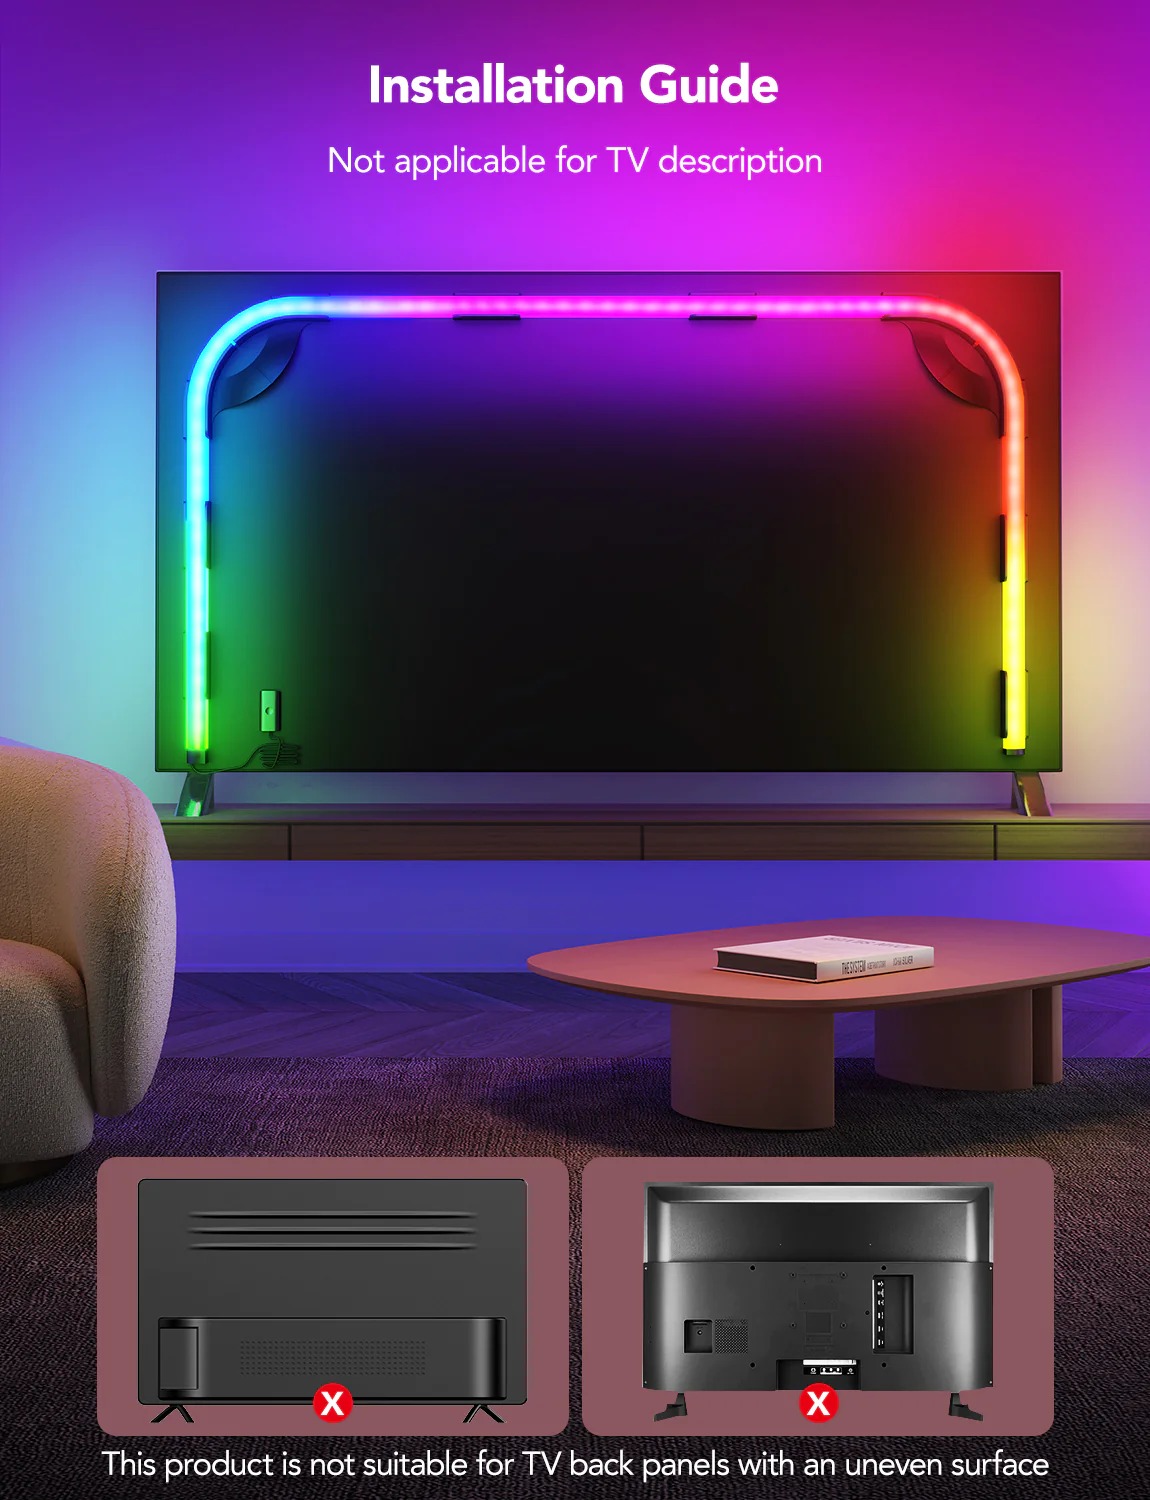 Dây đèn LED RGB Govee RGBIC Neon TV Backlight H61B2 | Công nghệ ánh sáng RGBIC 16 triệu màu | Đèn nền hiện đại cho TV